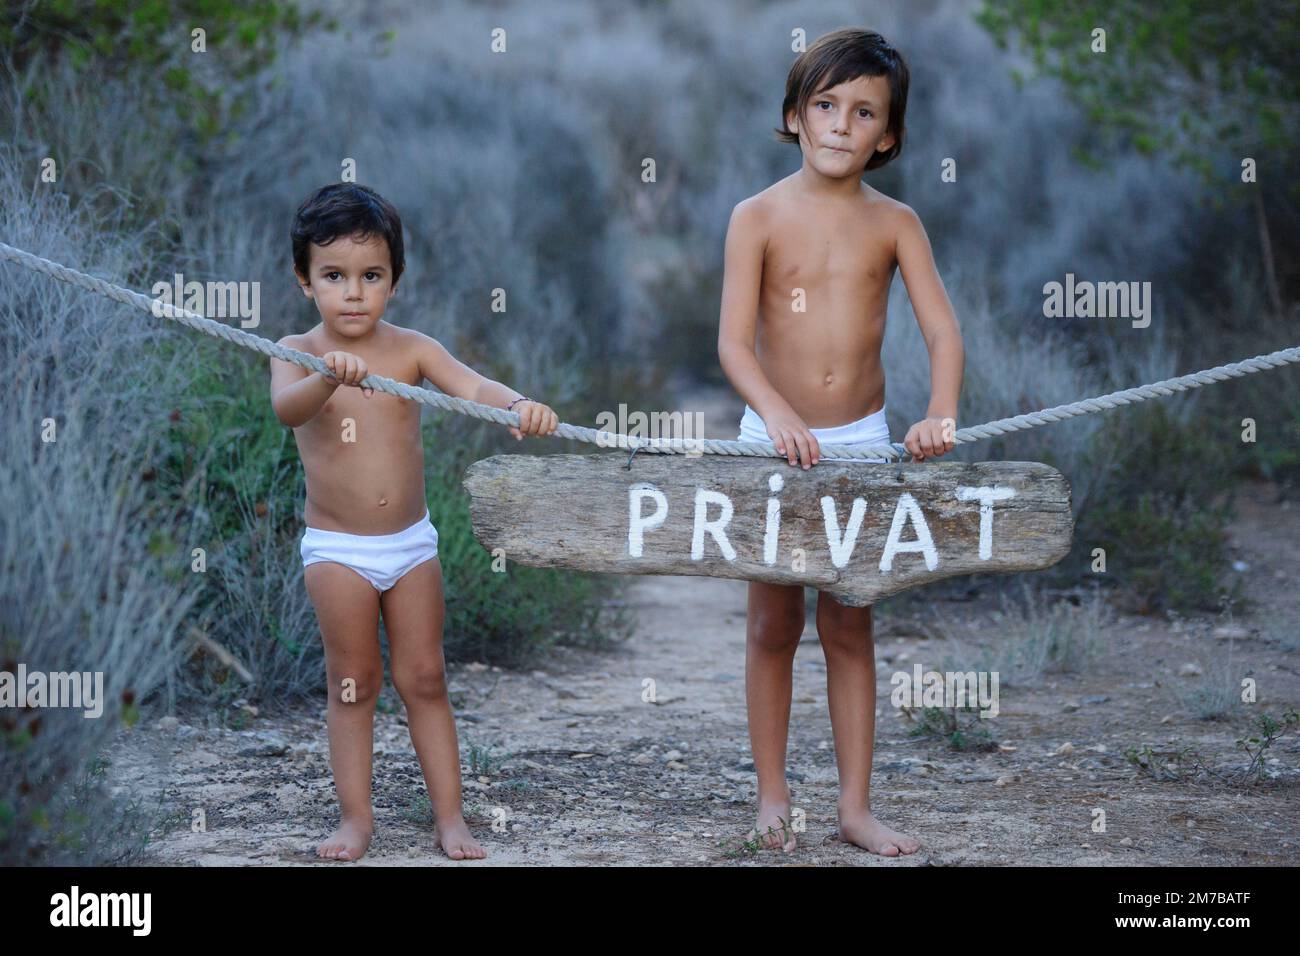 niños en un camino, S' estalella, Llucmajor, Mallorca, islas Baleares, Spain Stock Photo